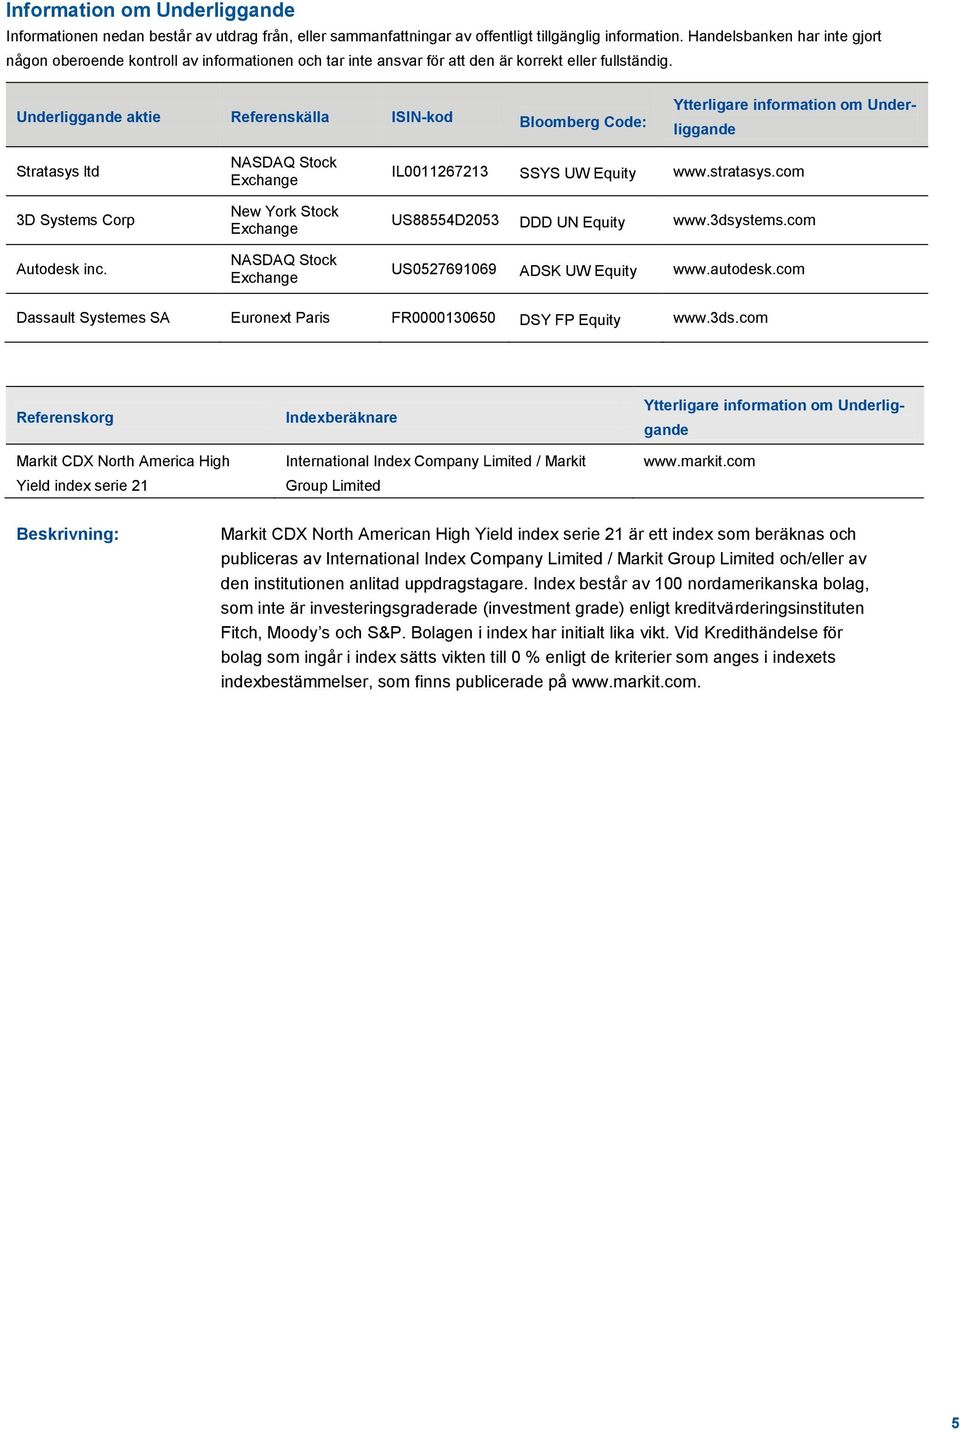 Underliggande aktie Referenskälla ISIN-kod Bloomberg Code: Ytterligare information om Underliggande Stratasys ltd 3D Systems Corp Autodesk inc.